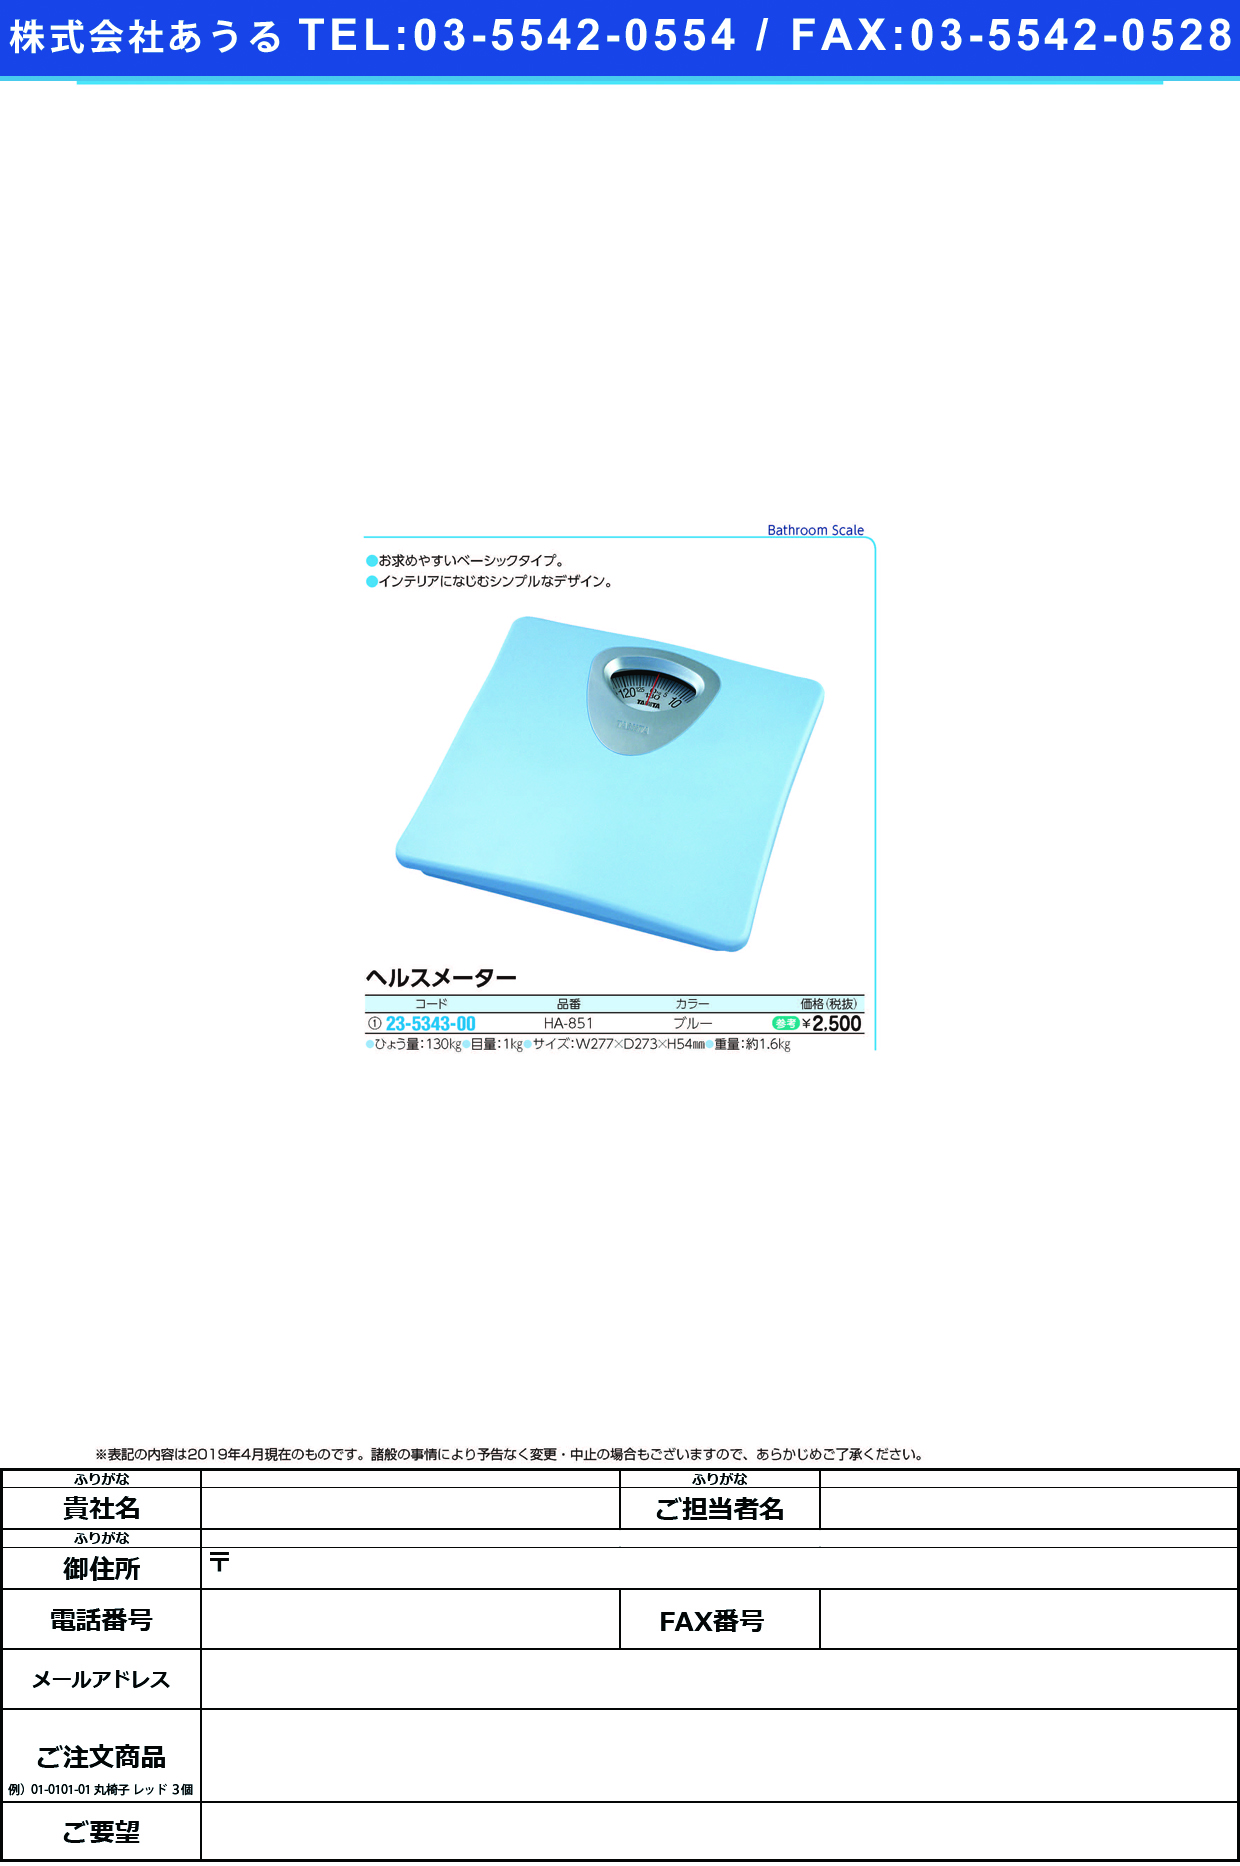 (23-5343-00)アナログヘルスメーター HA-851(ﾌﾞﾙｰ) ｱﾅﾛｸﾞﾍﾙｽﾒｰﾀｰ(タニタ)【1台単位】【2019年カタログ商品】